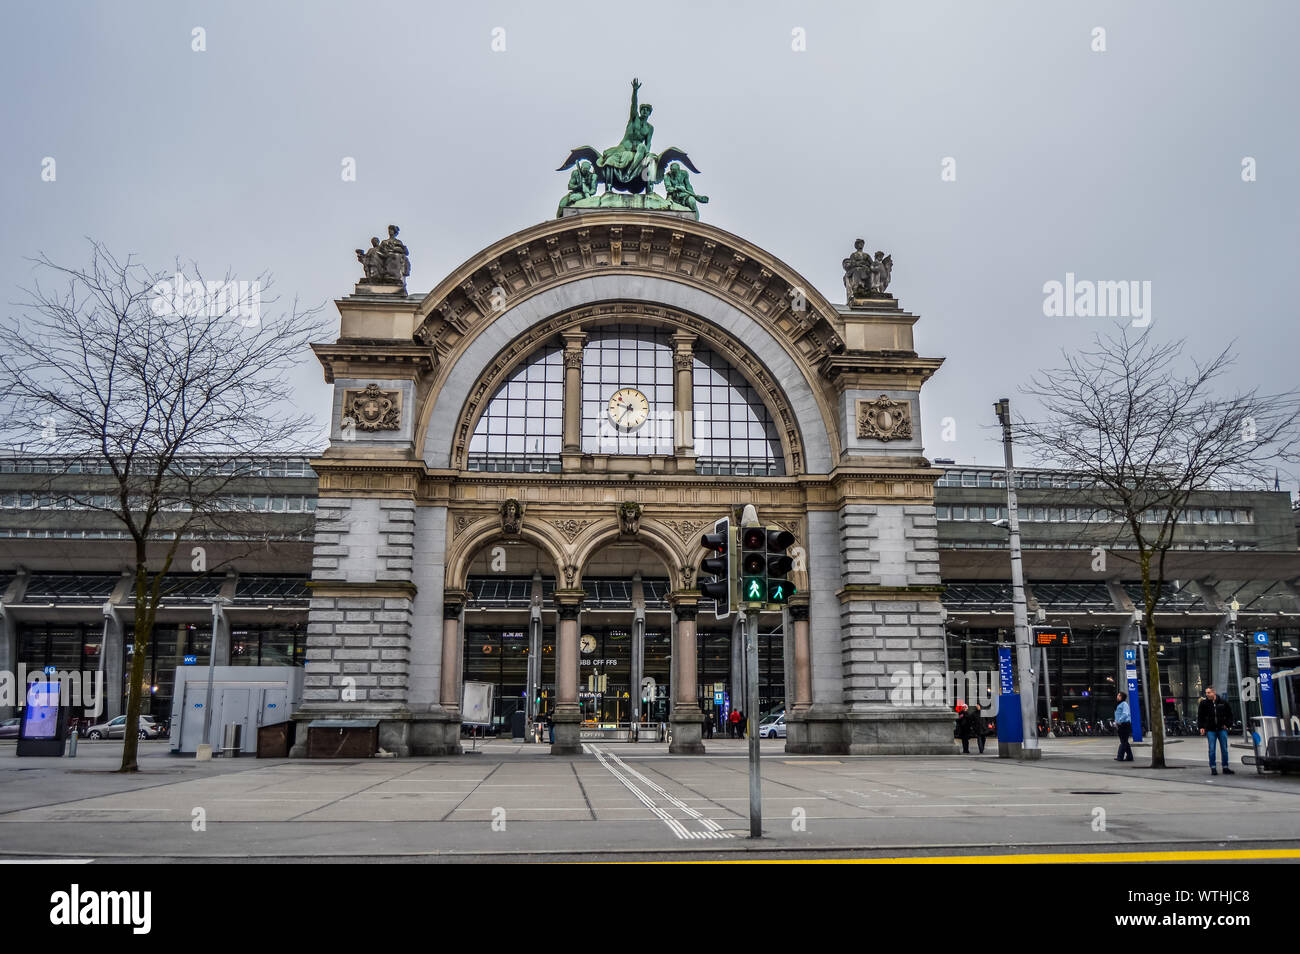 Berühmte alte Tor von Luzern Hauptbahnhof in der Schweiz Stockfotografie -  Alamy